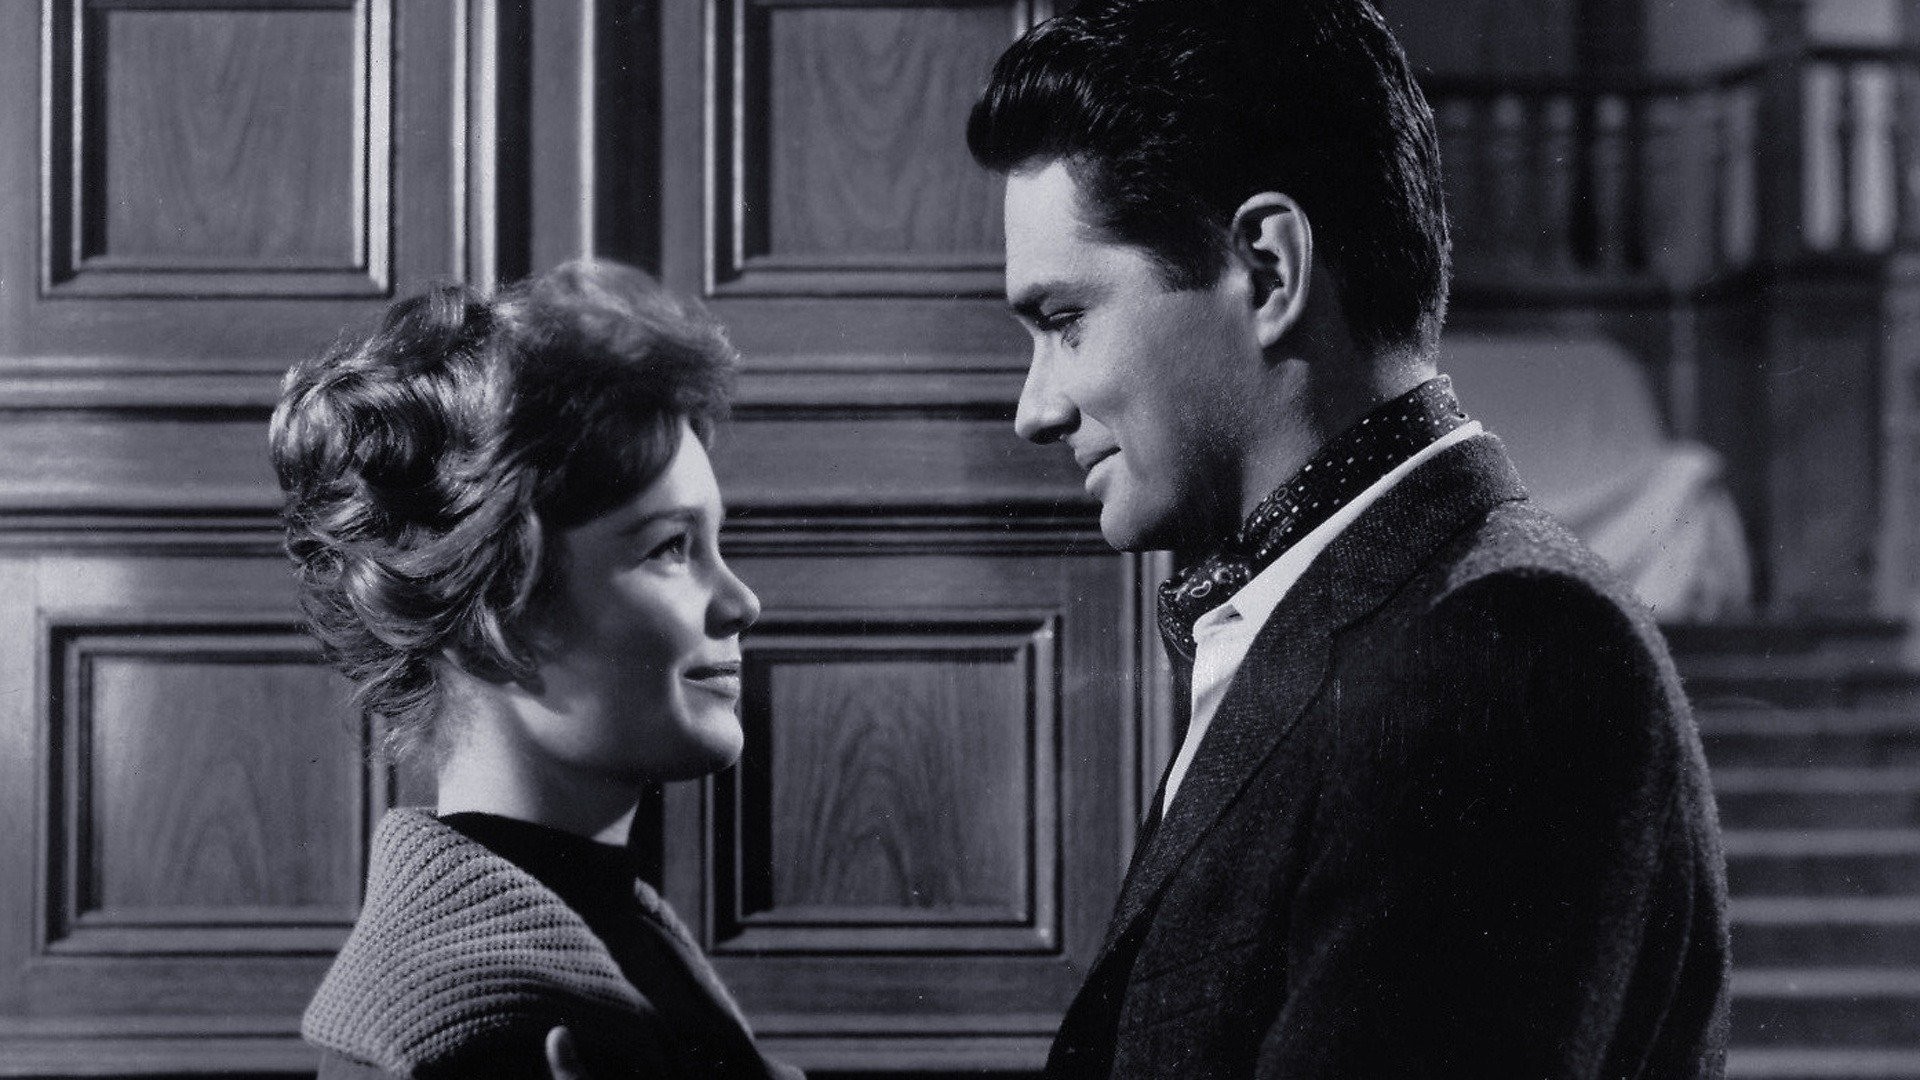 Return to Peyton Place (1961) - IMDb